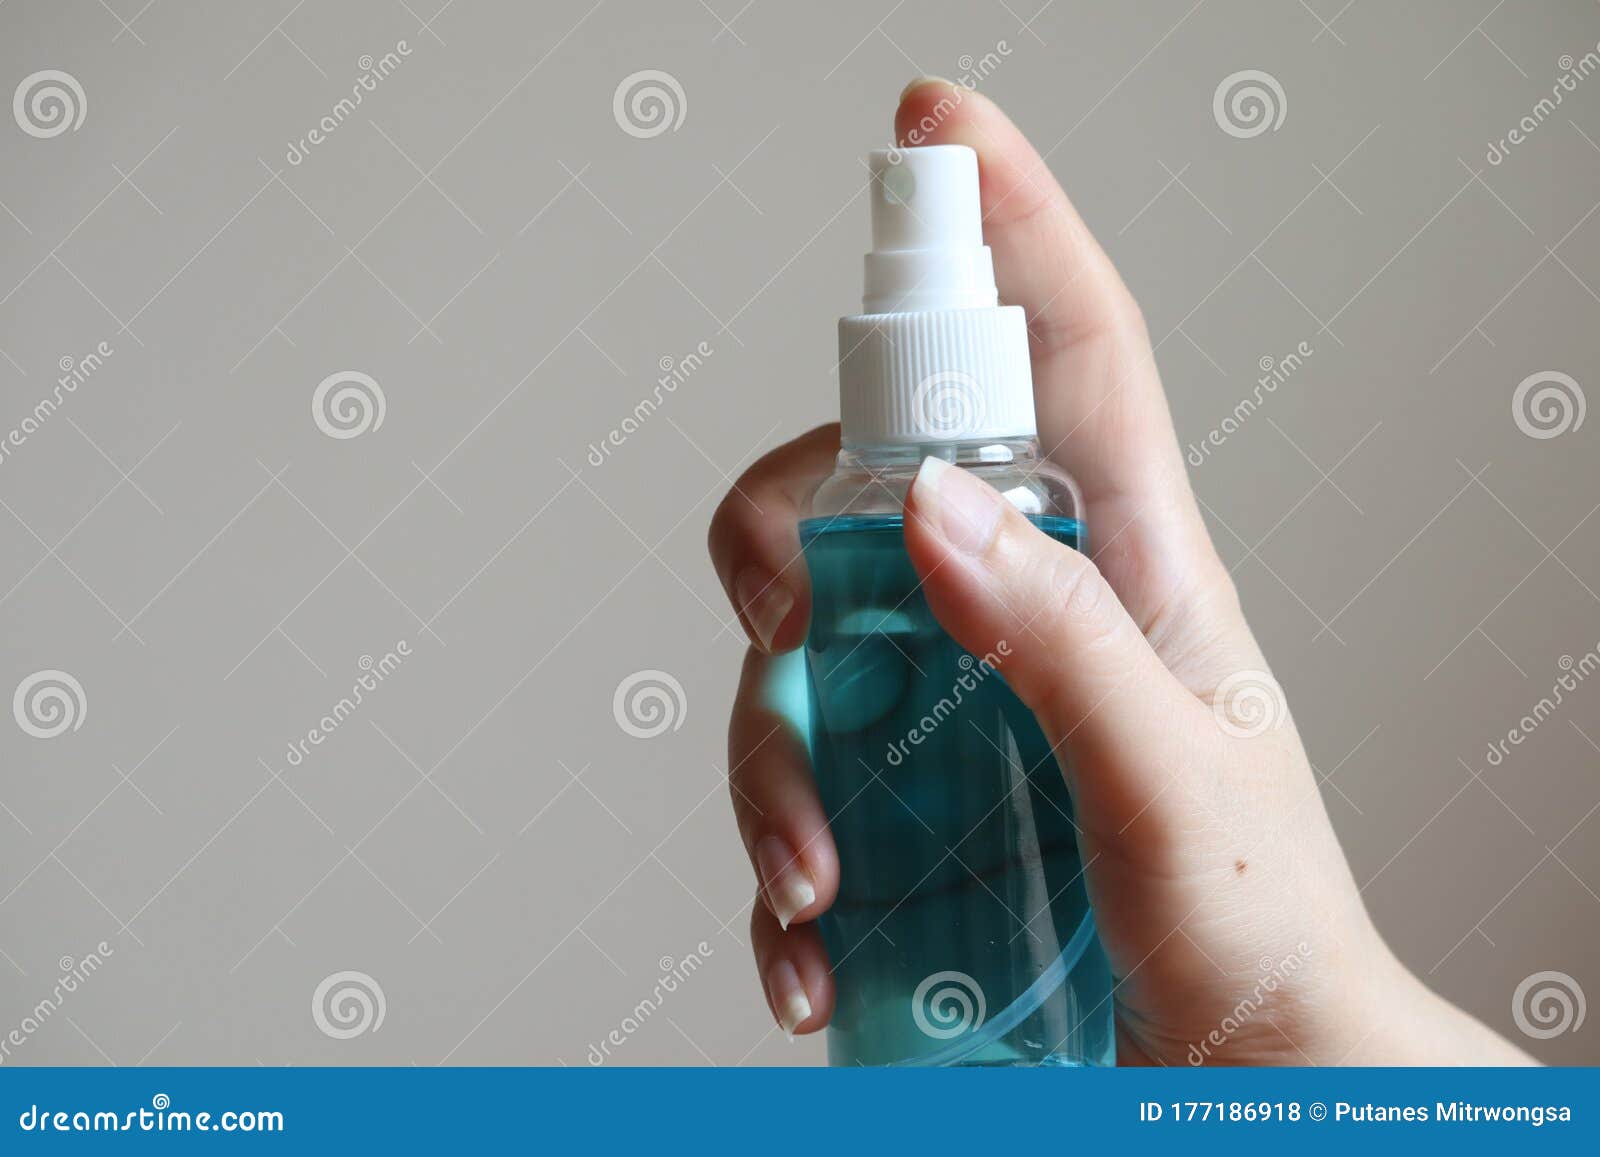 liquidÃ¢â¬â¹ alcoholÃ¢â¬â¹ spray tube for cleaning and disinfecting the hands.